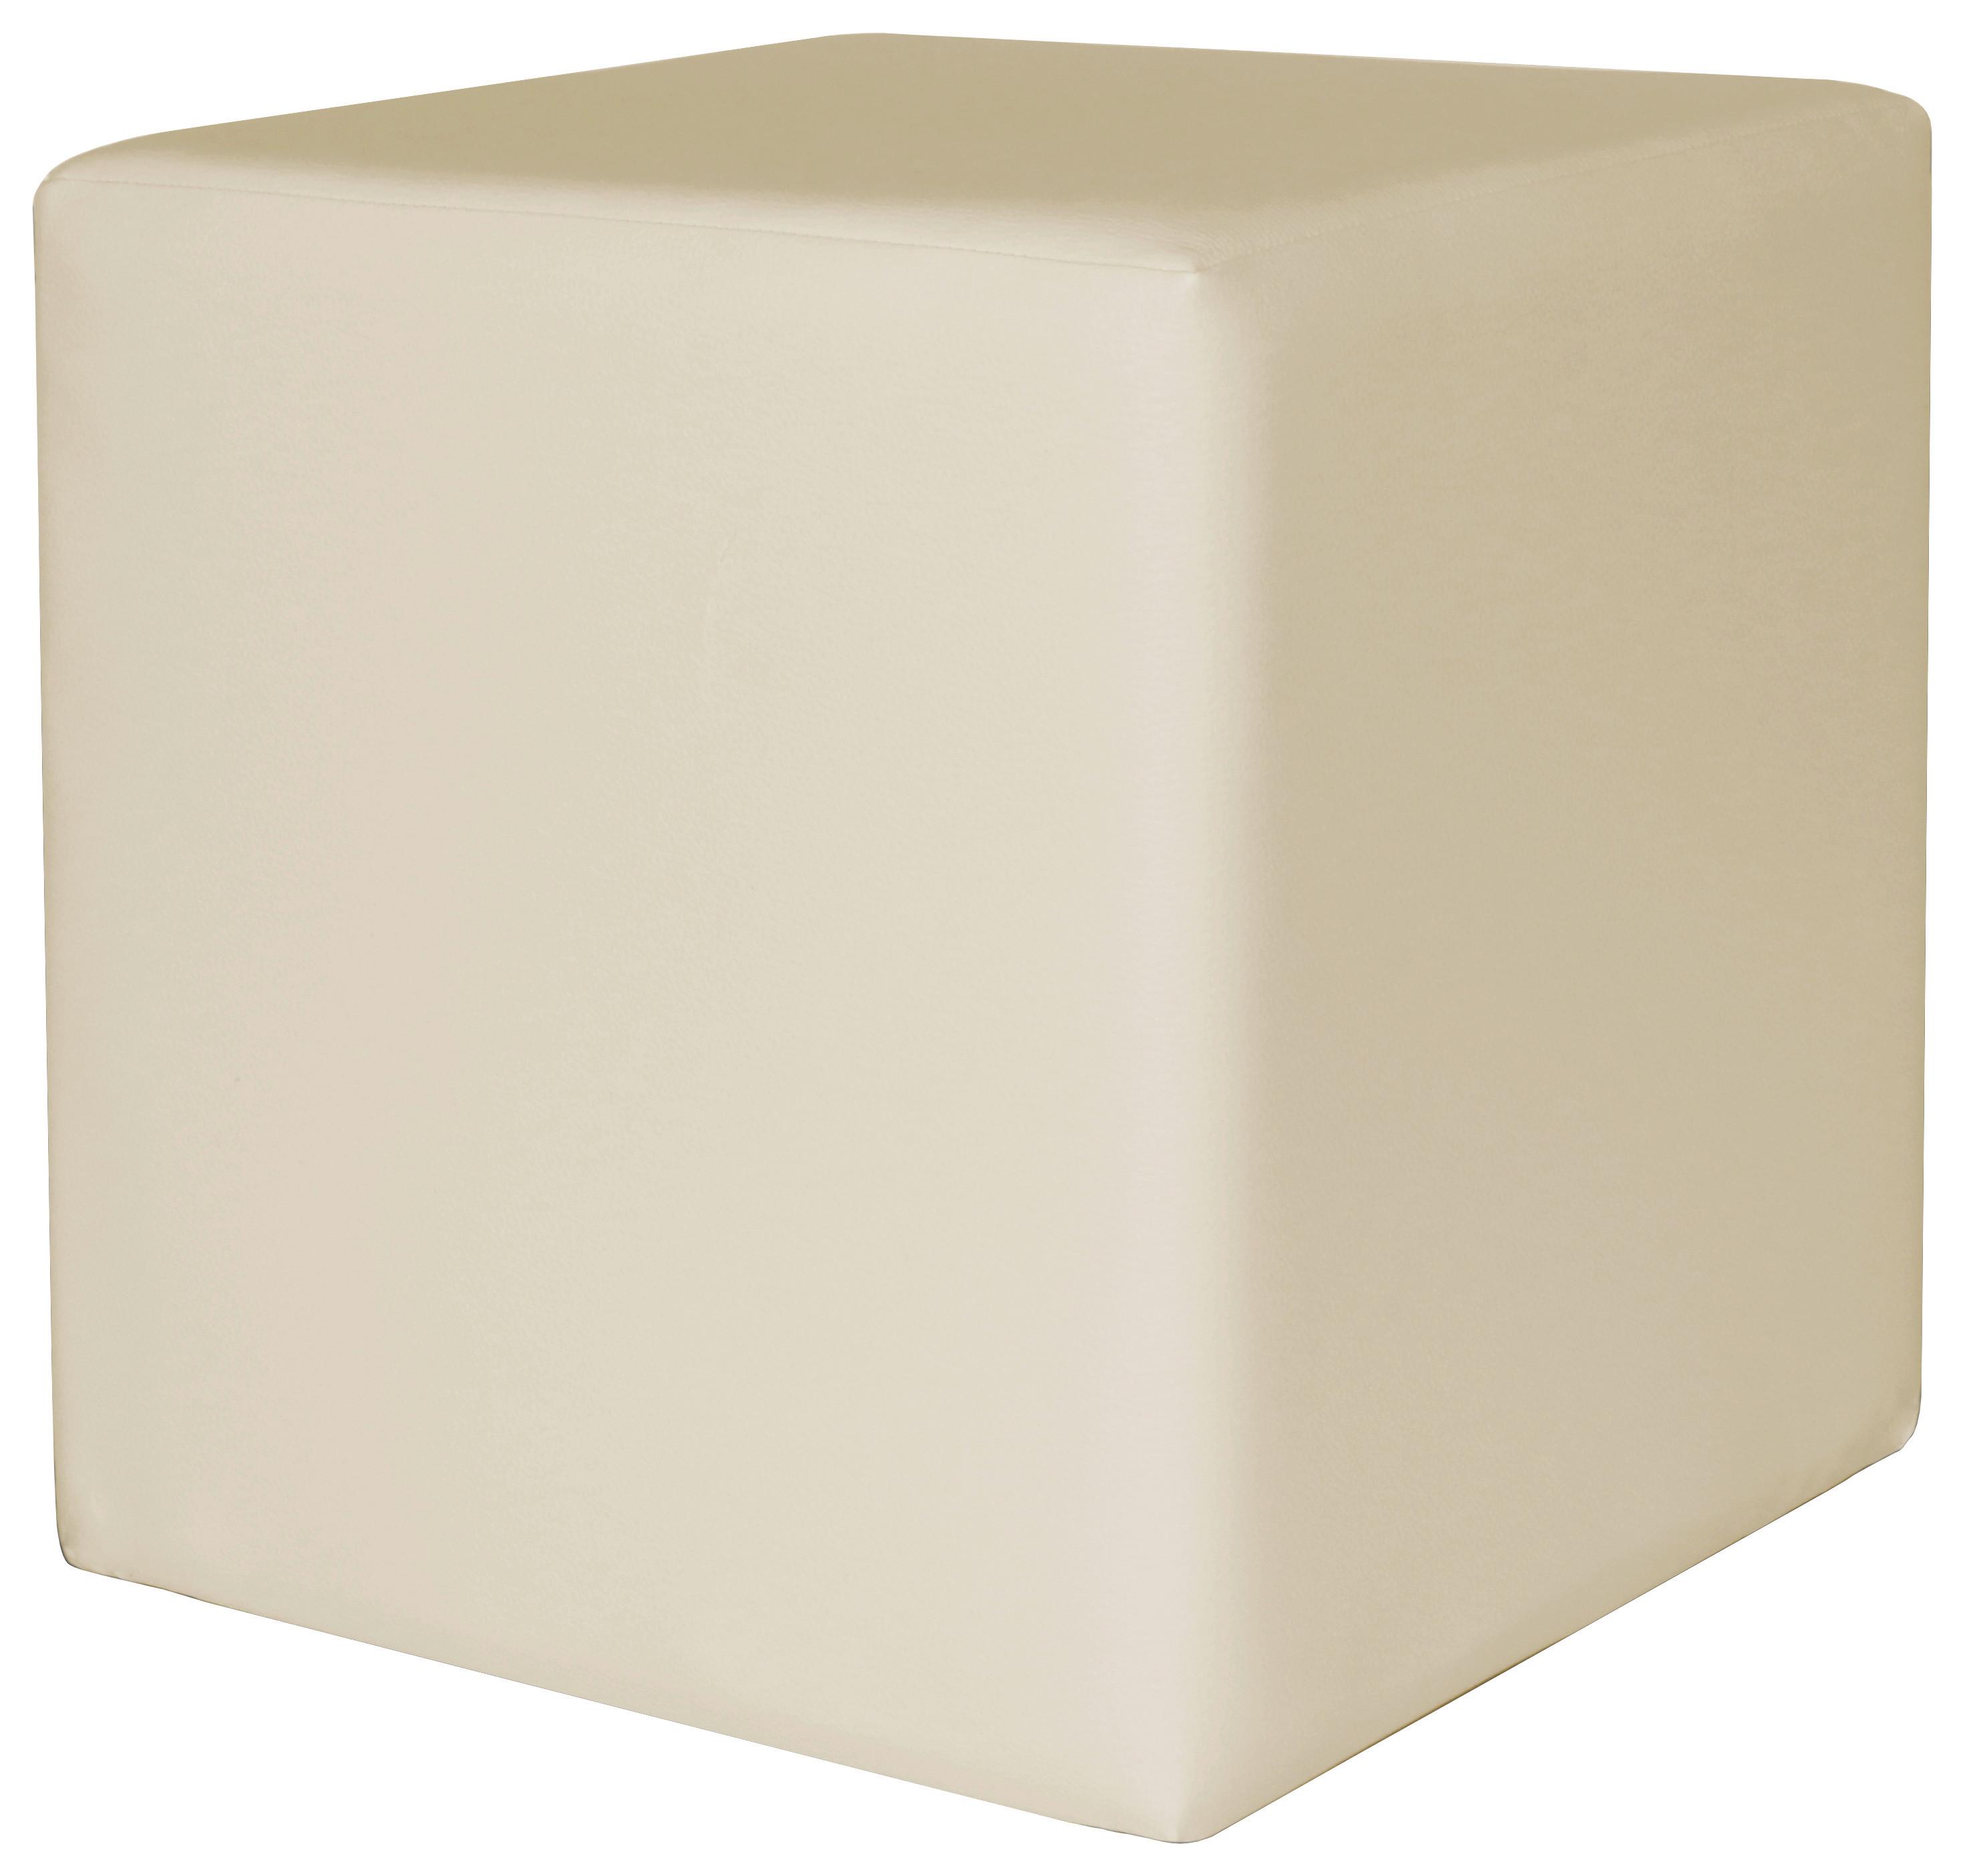 Tabure Colorfull Cube - bež/krem, Modern, tekstil/plastika (40/40/42cm) - Based